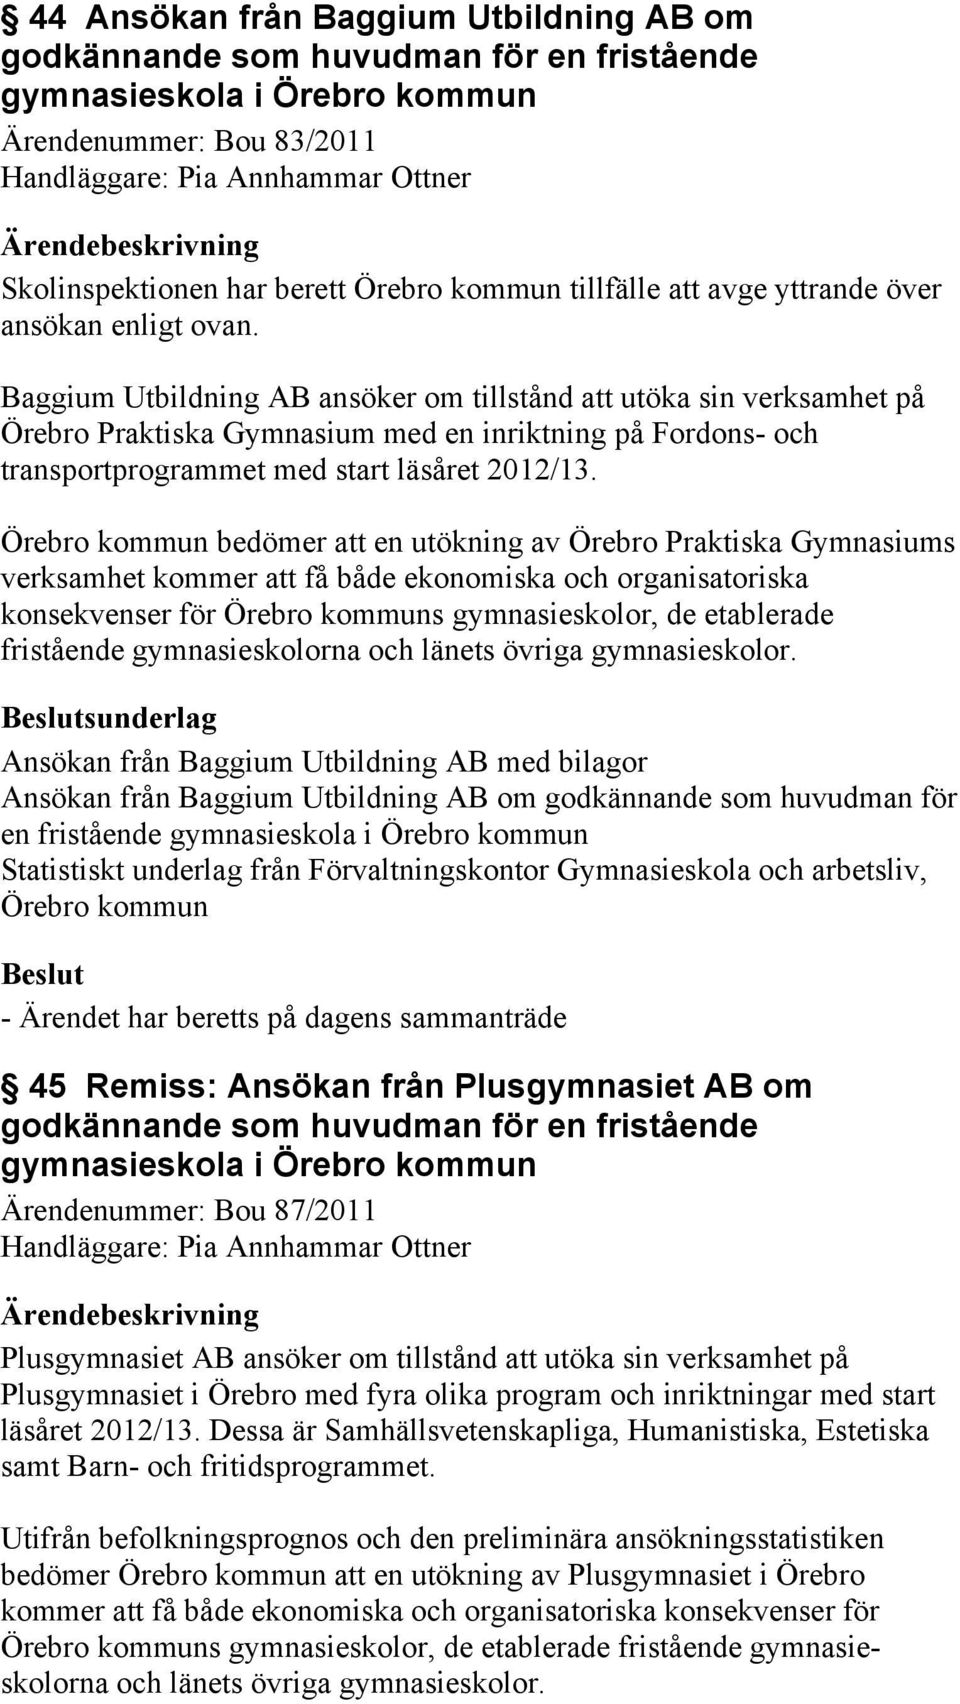 Baggium Utbildning AB ansöker om tillstånd att utöka sin verksamhet på Örebro Praktiska Gymnasium med en inriktning på Fordons- och transportprogrammet med start läsåret 2012/13.